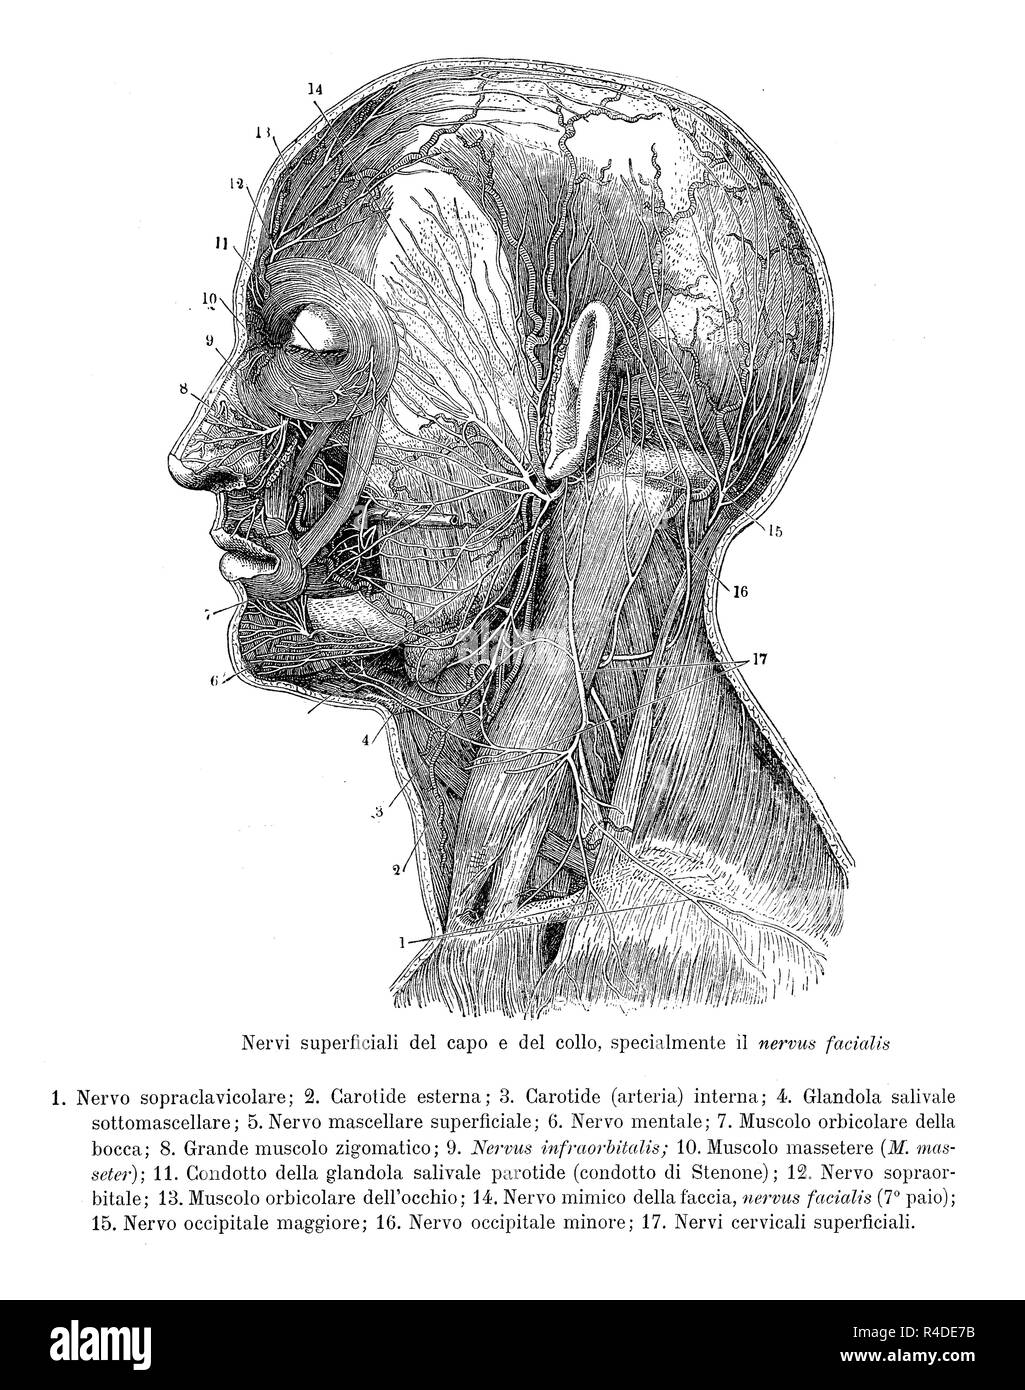 Vintage illustrazione di anatomia, la sezione trasversale della testa umana e collo con prove di nervi superficiali, descrizioni anatomiche in italiano Foto Stock